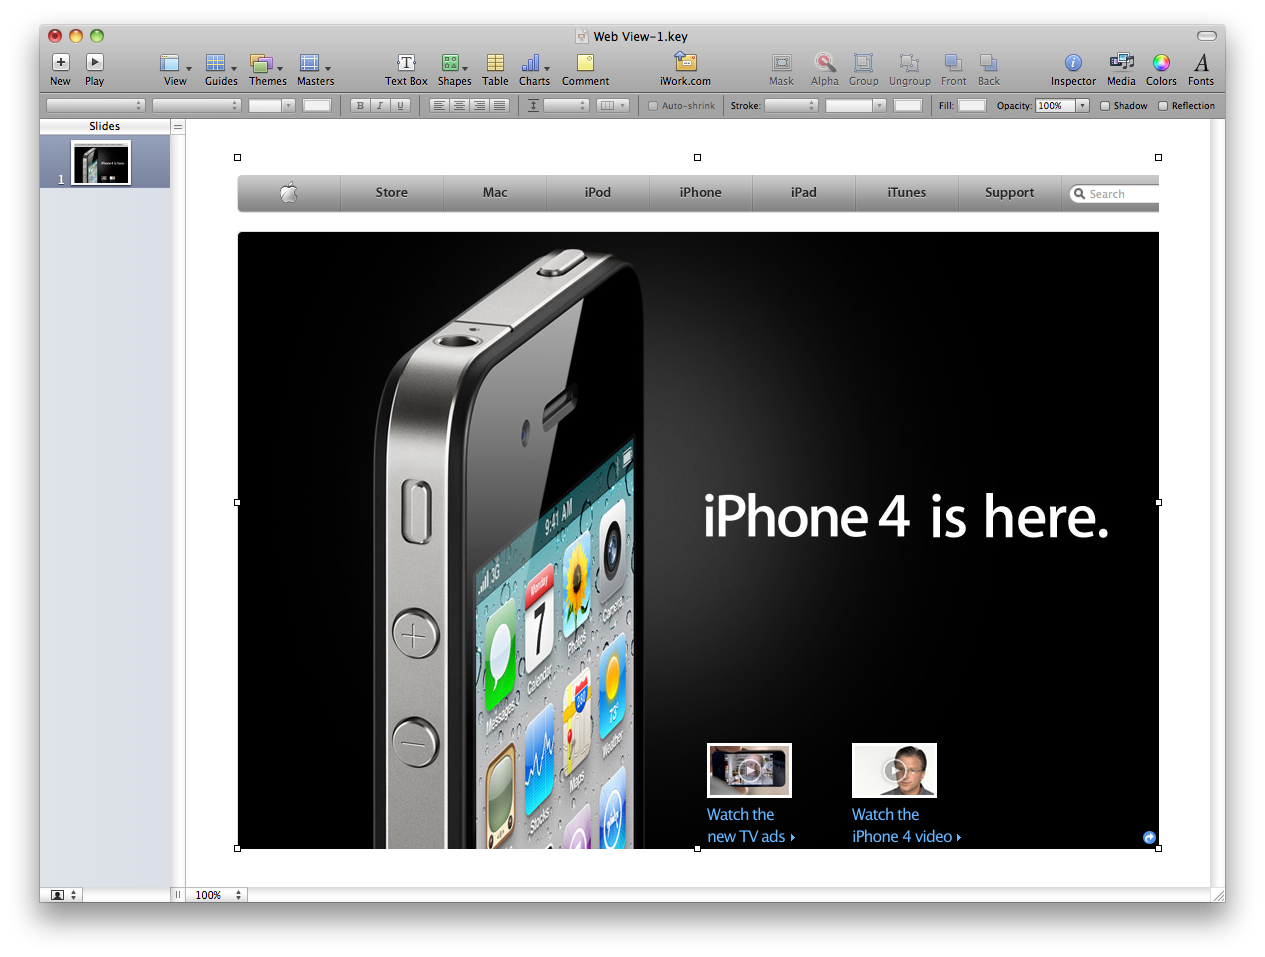 Apple Homepage in Keynote 09